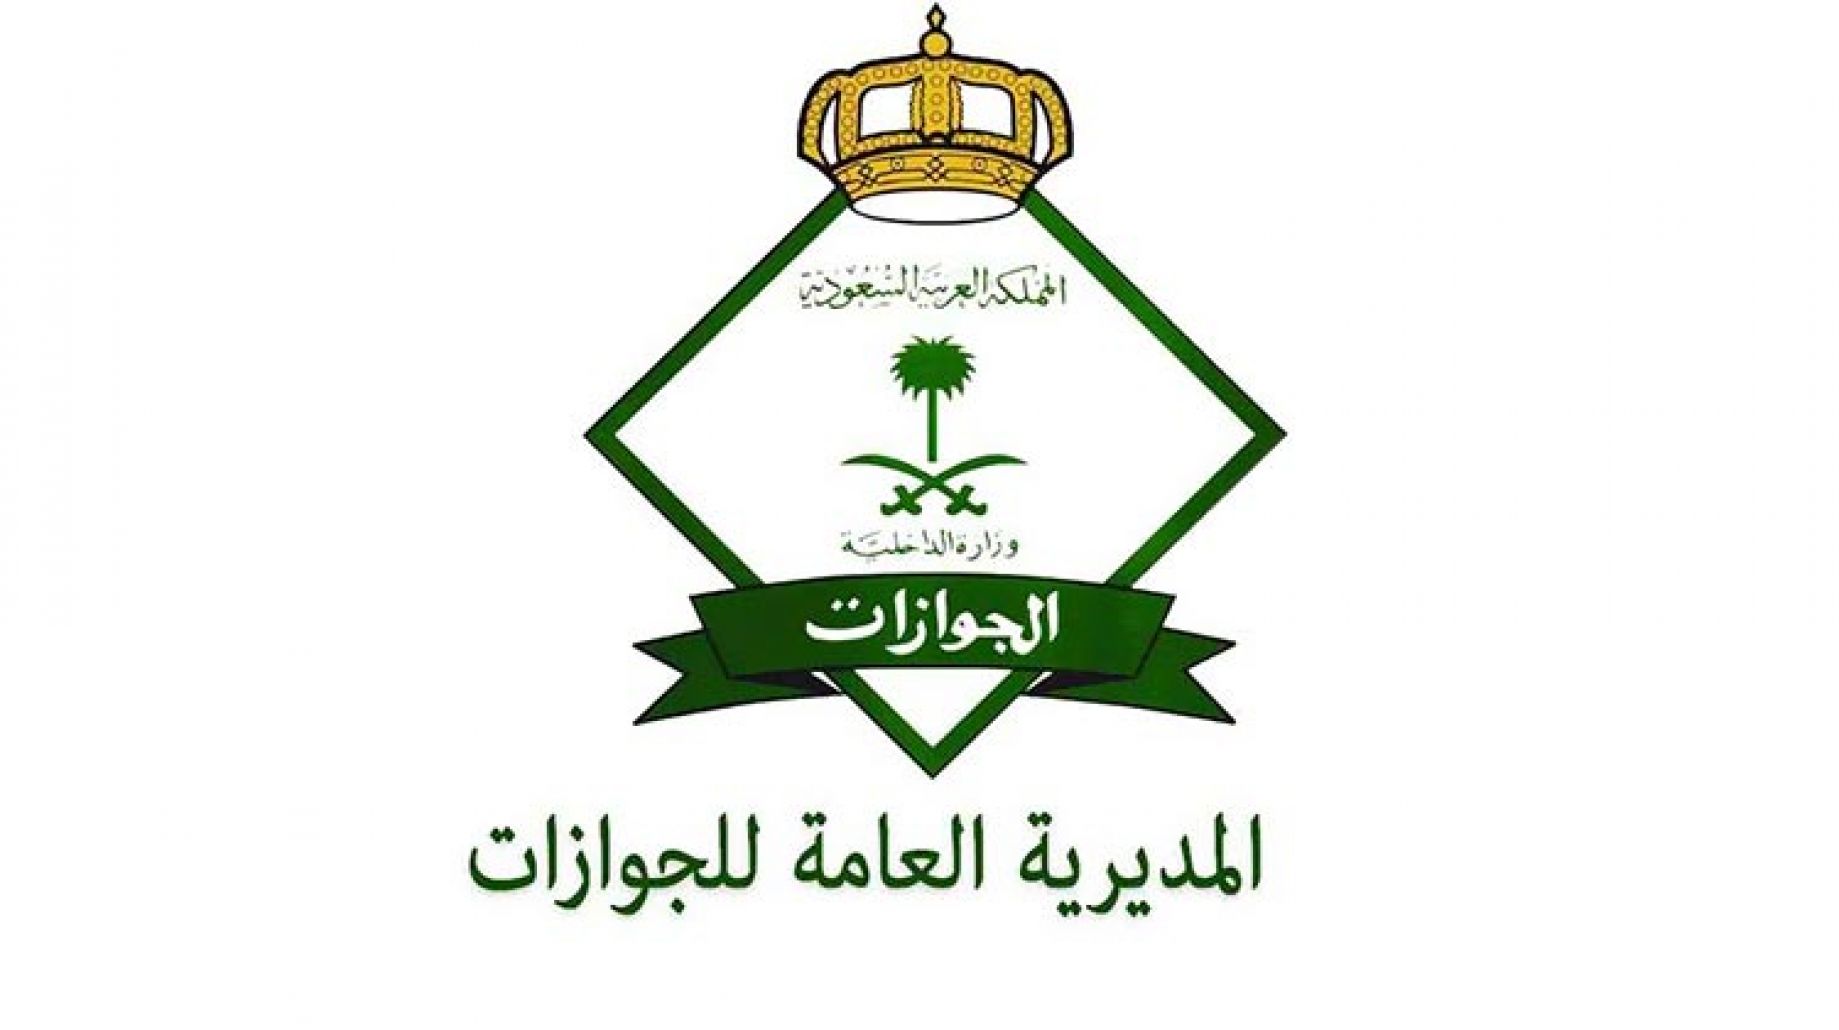 البوكس نيوز – مديرية الجوازات بالمملكة العربية السعودية تعلن عن إصدارها قرار إداري